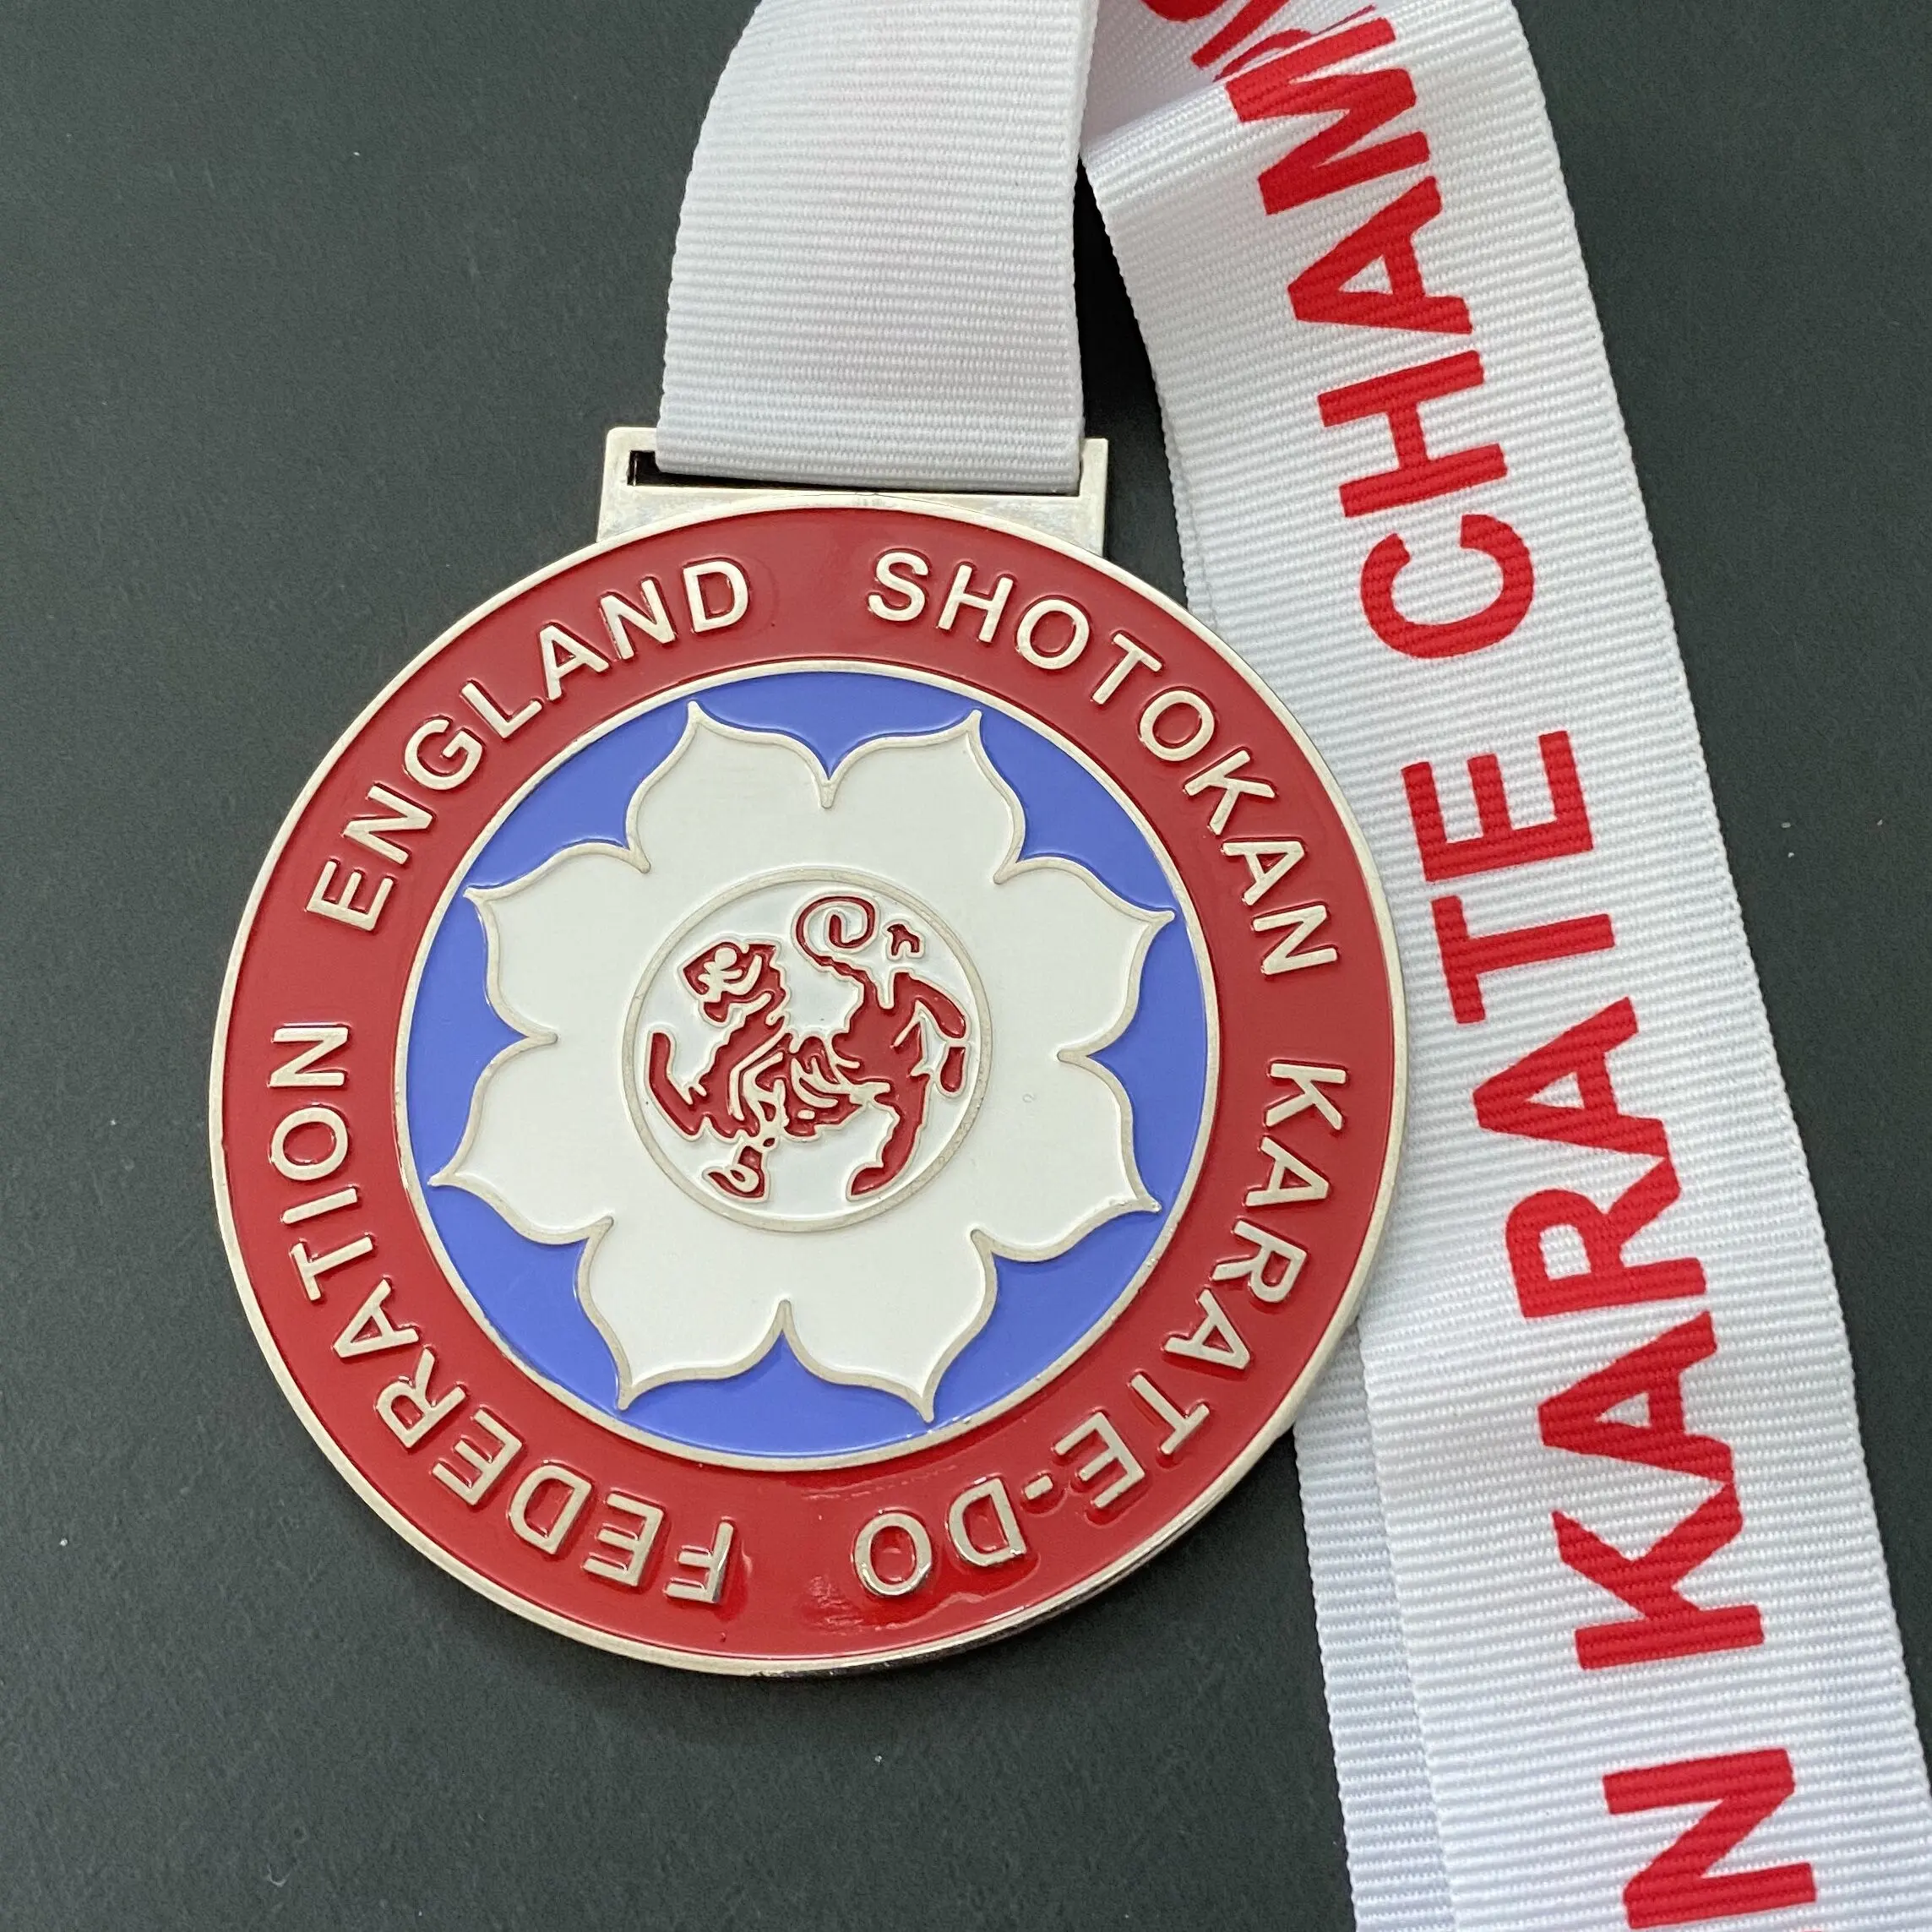 Özel İngiltere Shotokan Karate-Do federasyonu İngilizce açık Karate şampiyonası mucizevi spor madalyası